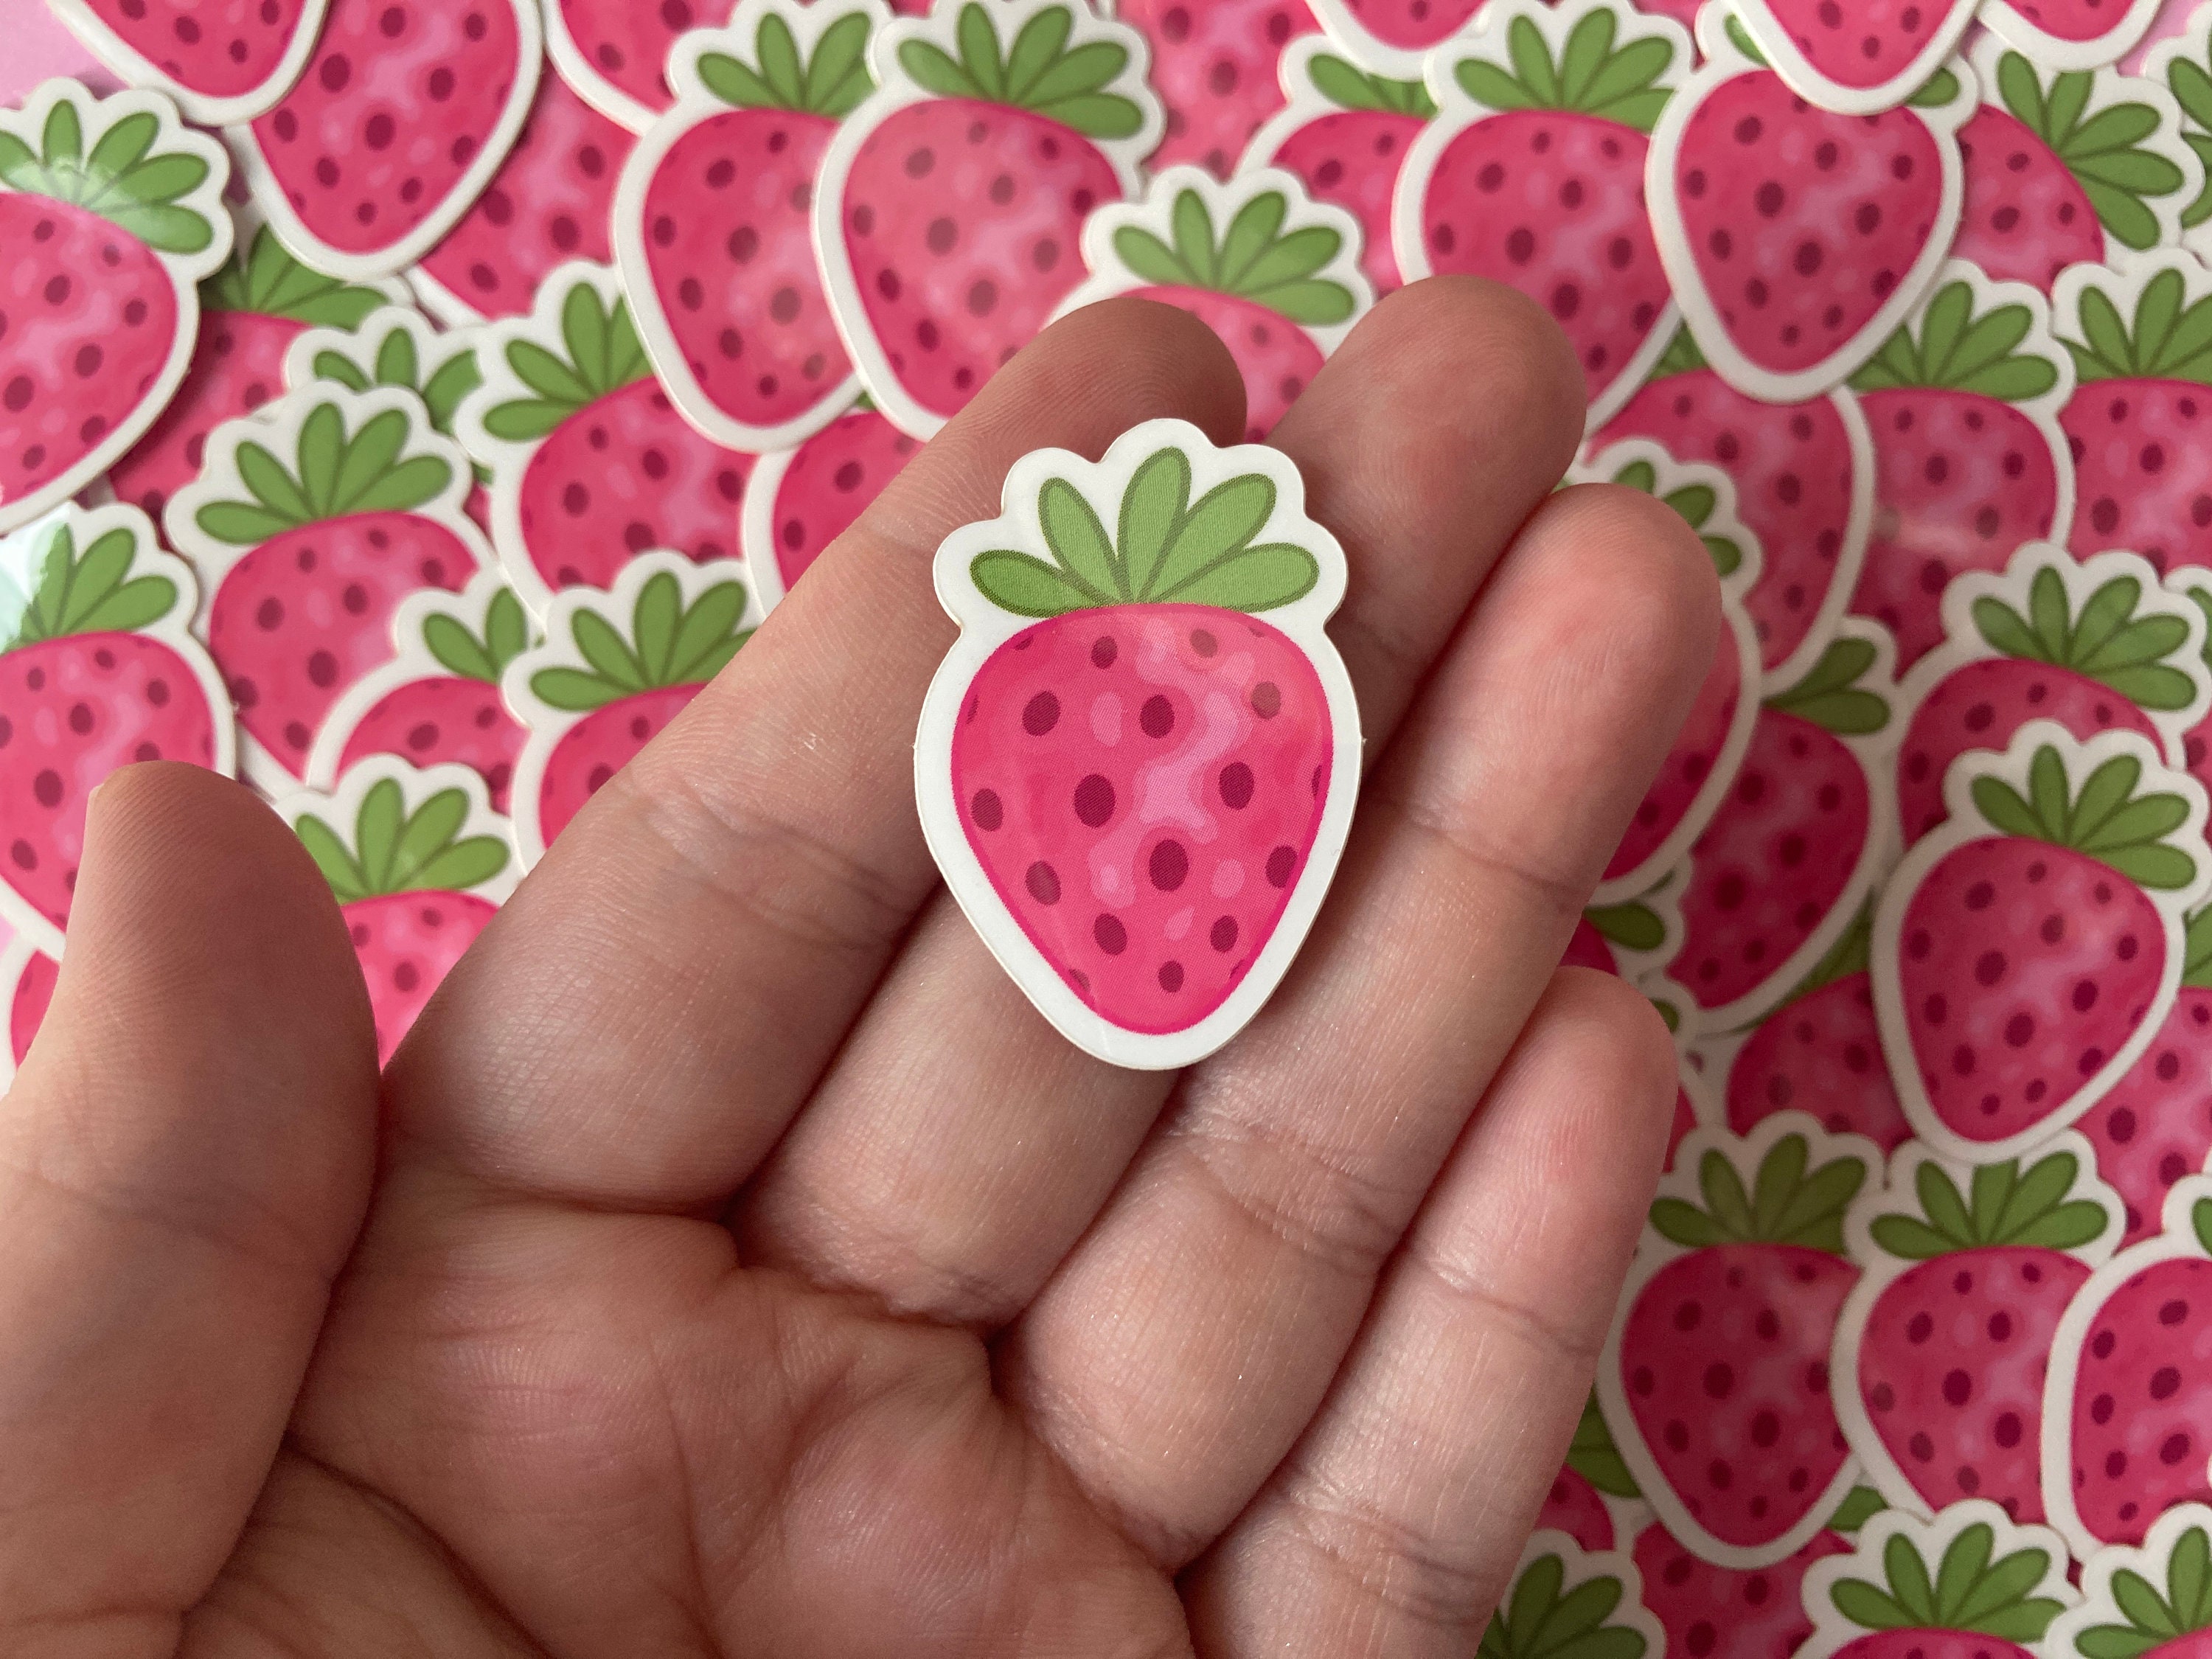 Strawberry cat Sticker - Stickers - Cute - Decal cut